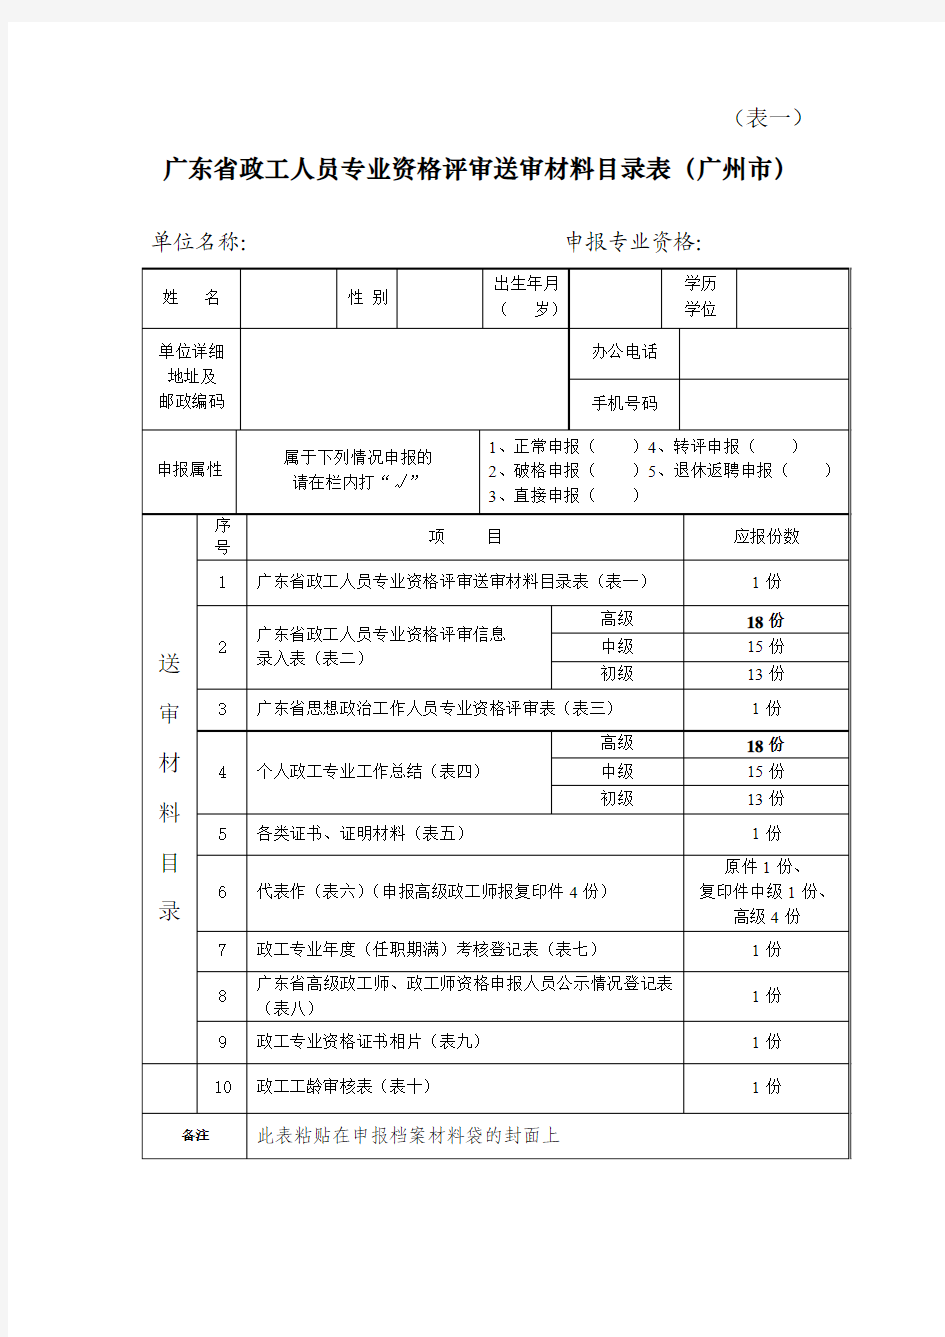 《广东省政工人员专业资格评审送审材料目录表》10份(表一至表十)